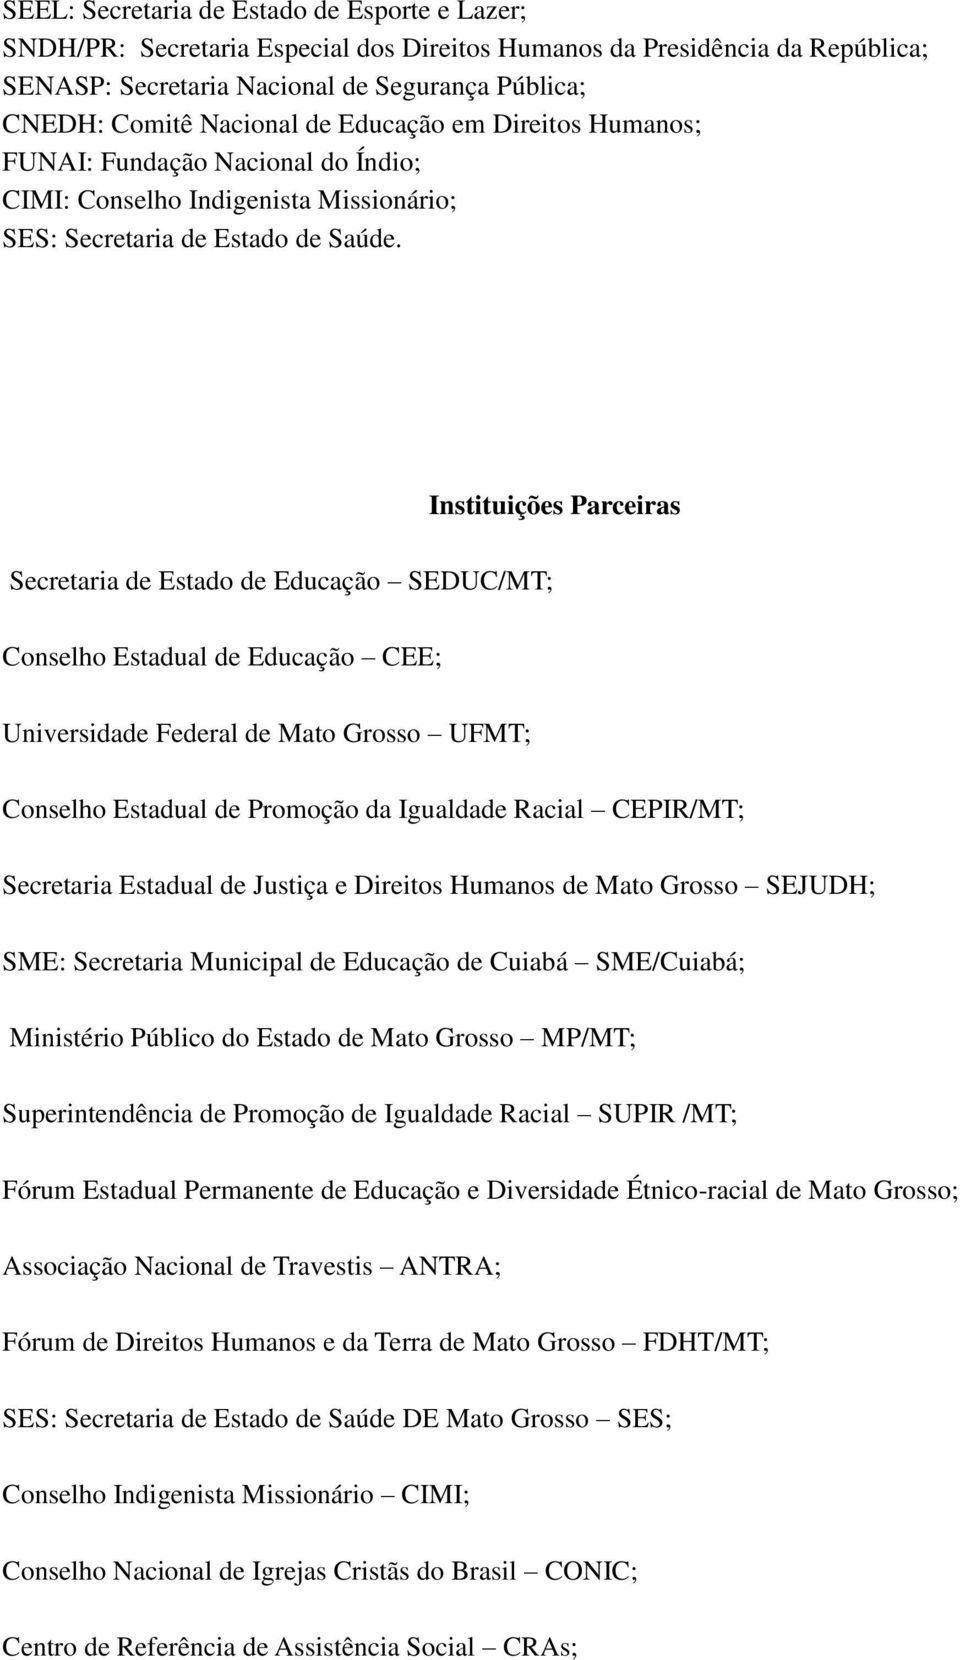 Instituições Parceiras Secretaria de Estado de Educação SEDUC/MT; Conselho Estadual de Educação CEE; Universidade Federal de Mato Grosso UFMT; Conselho Estadual de Promoção da Igualdade Racial